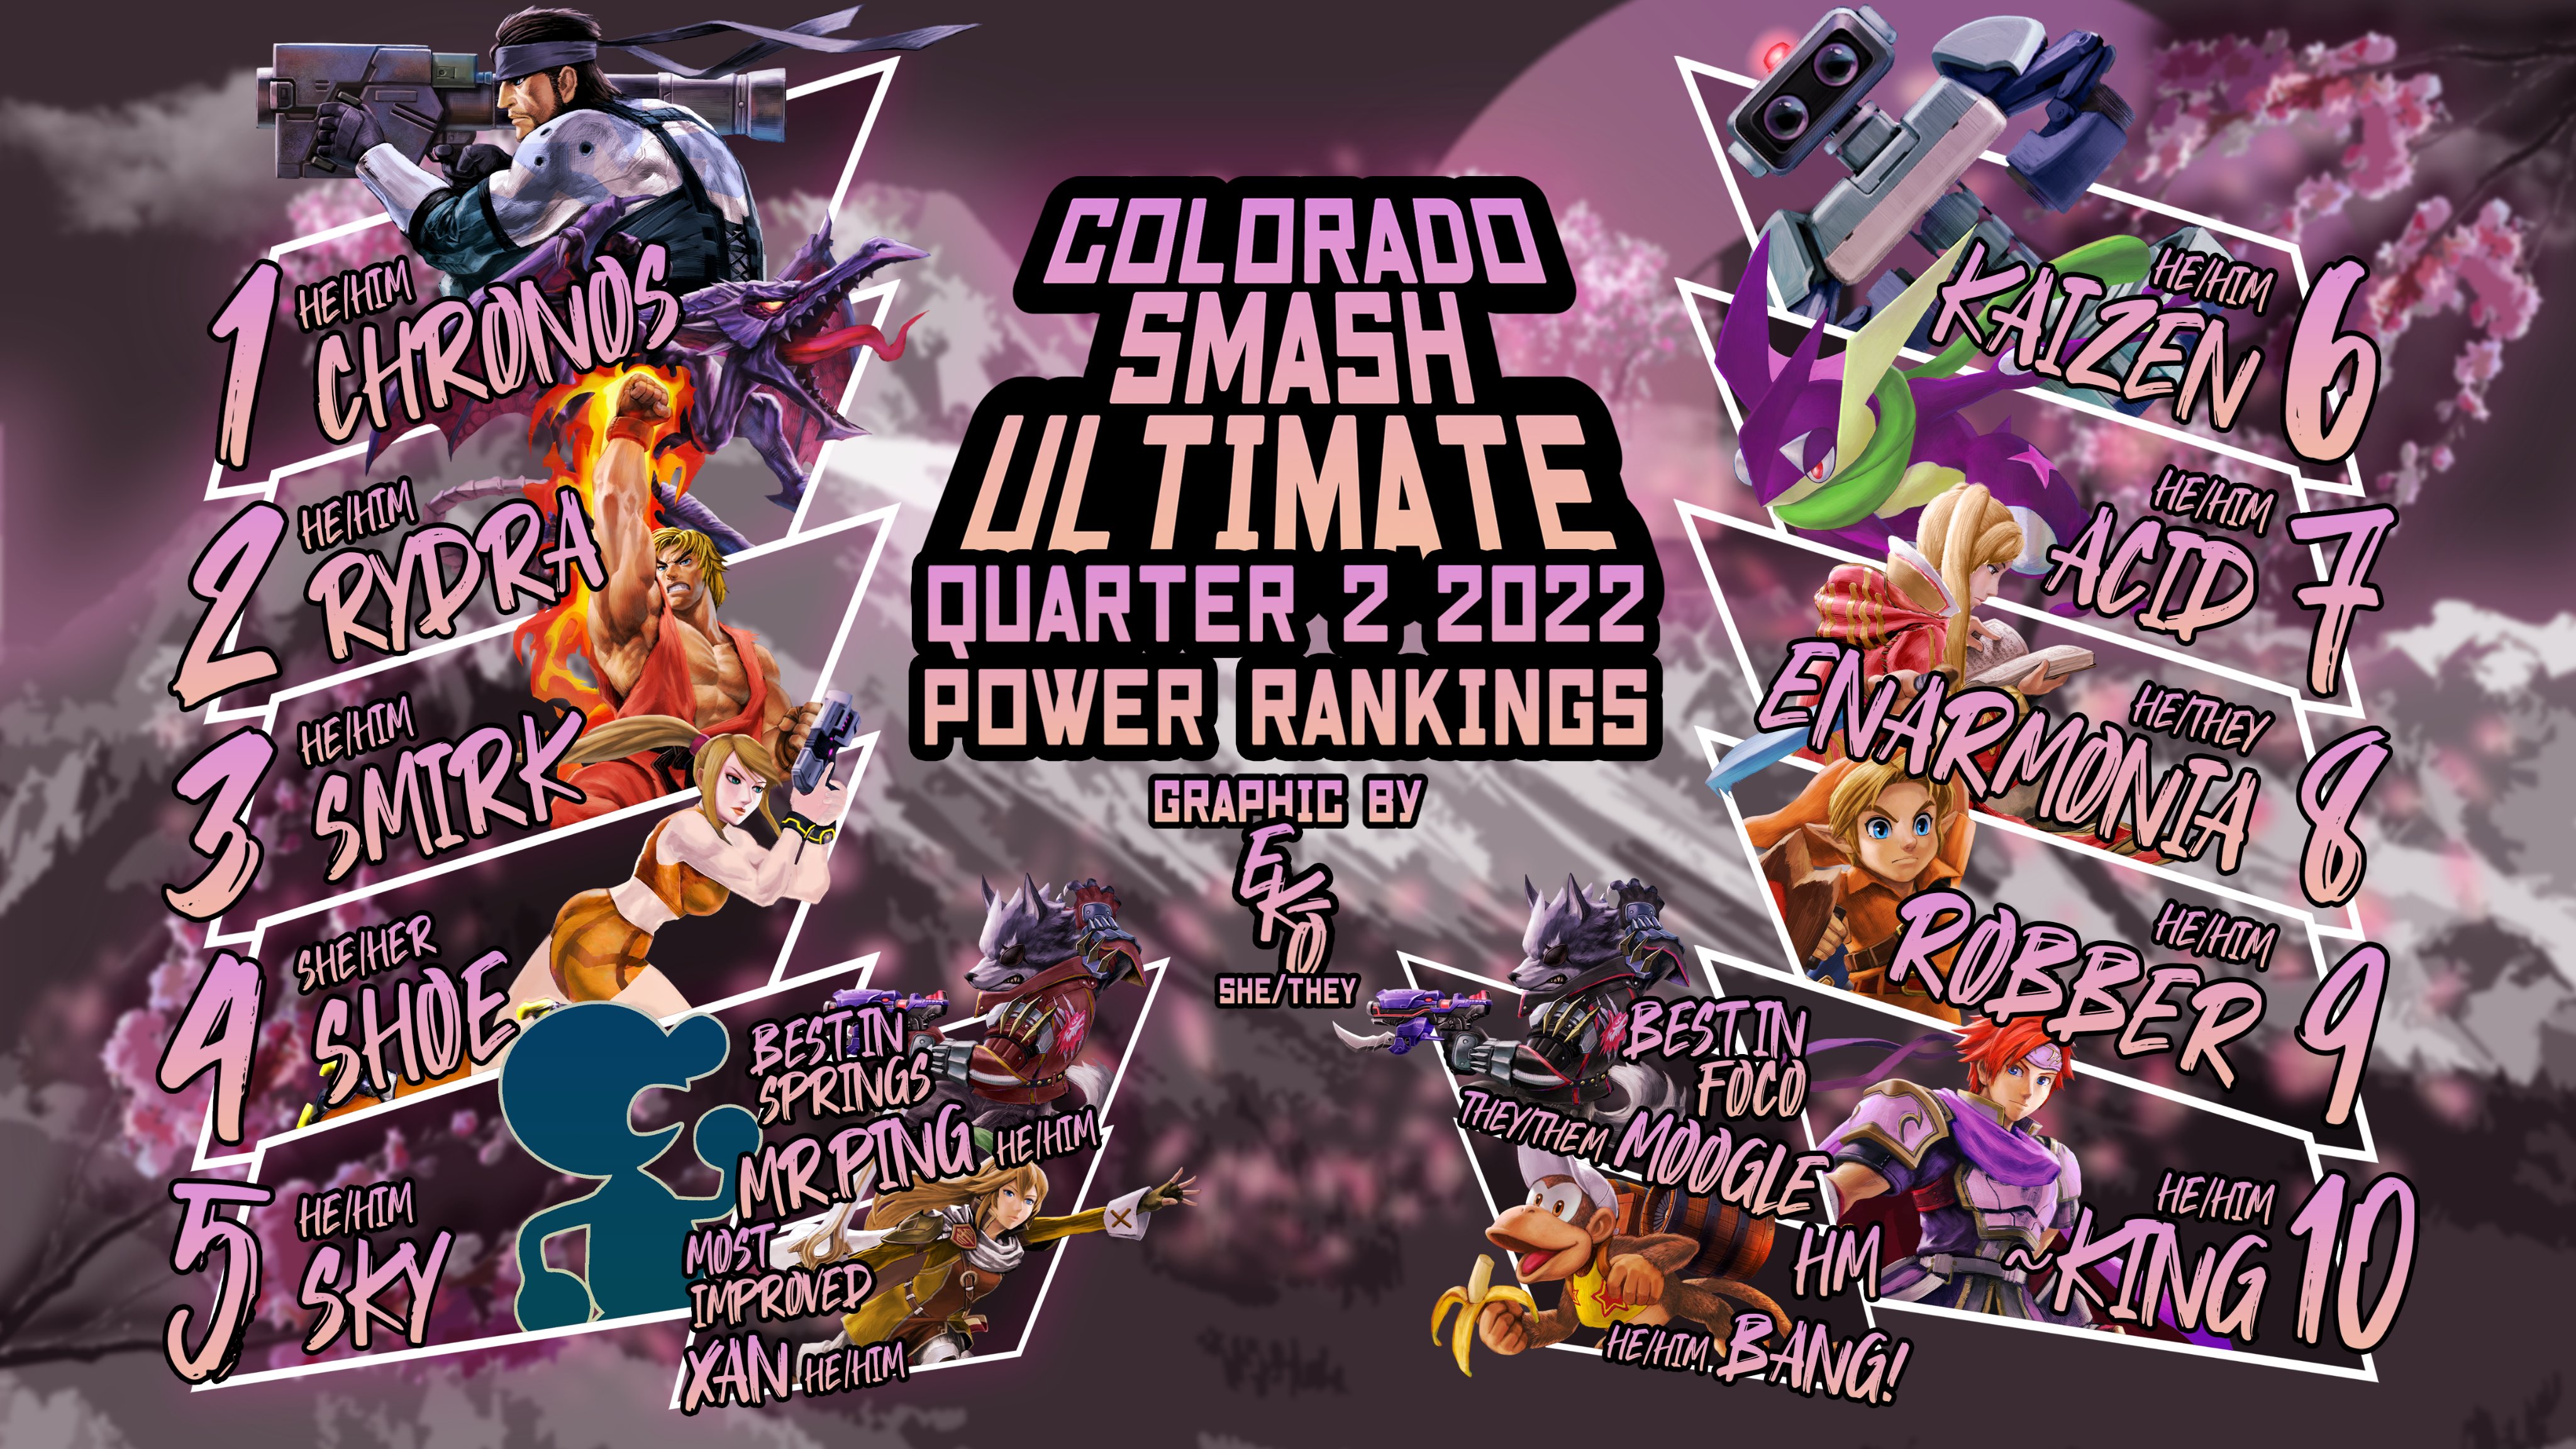 Colorado Smash Ultimate on Twitter "Congratulations Colorado Smash